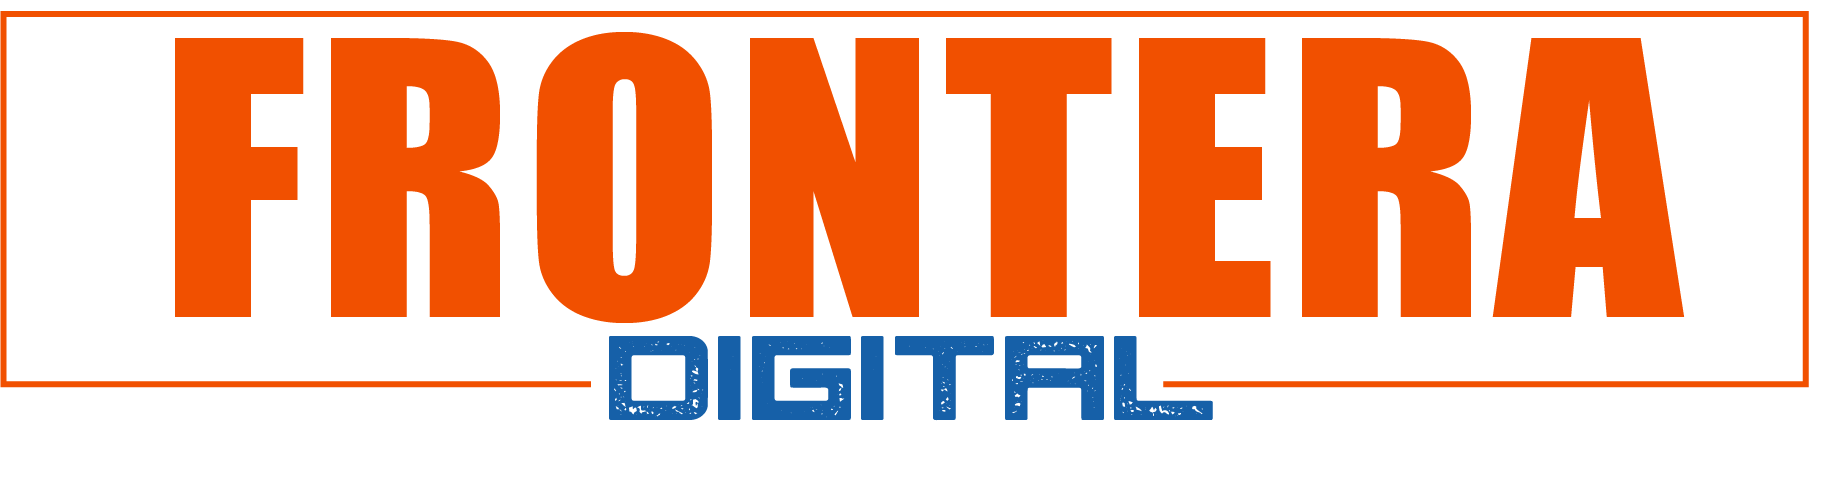 Frontera Digital